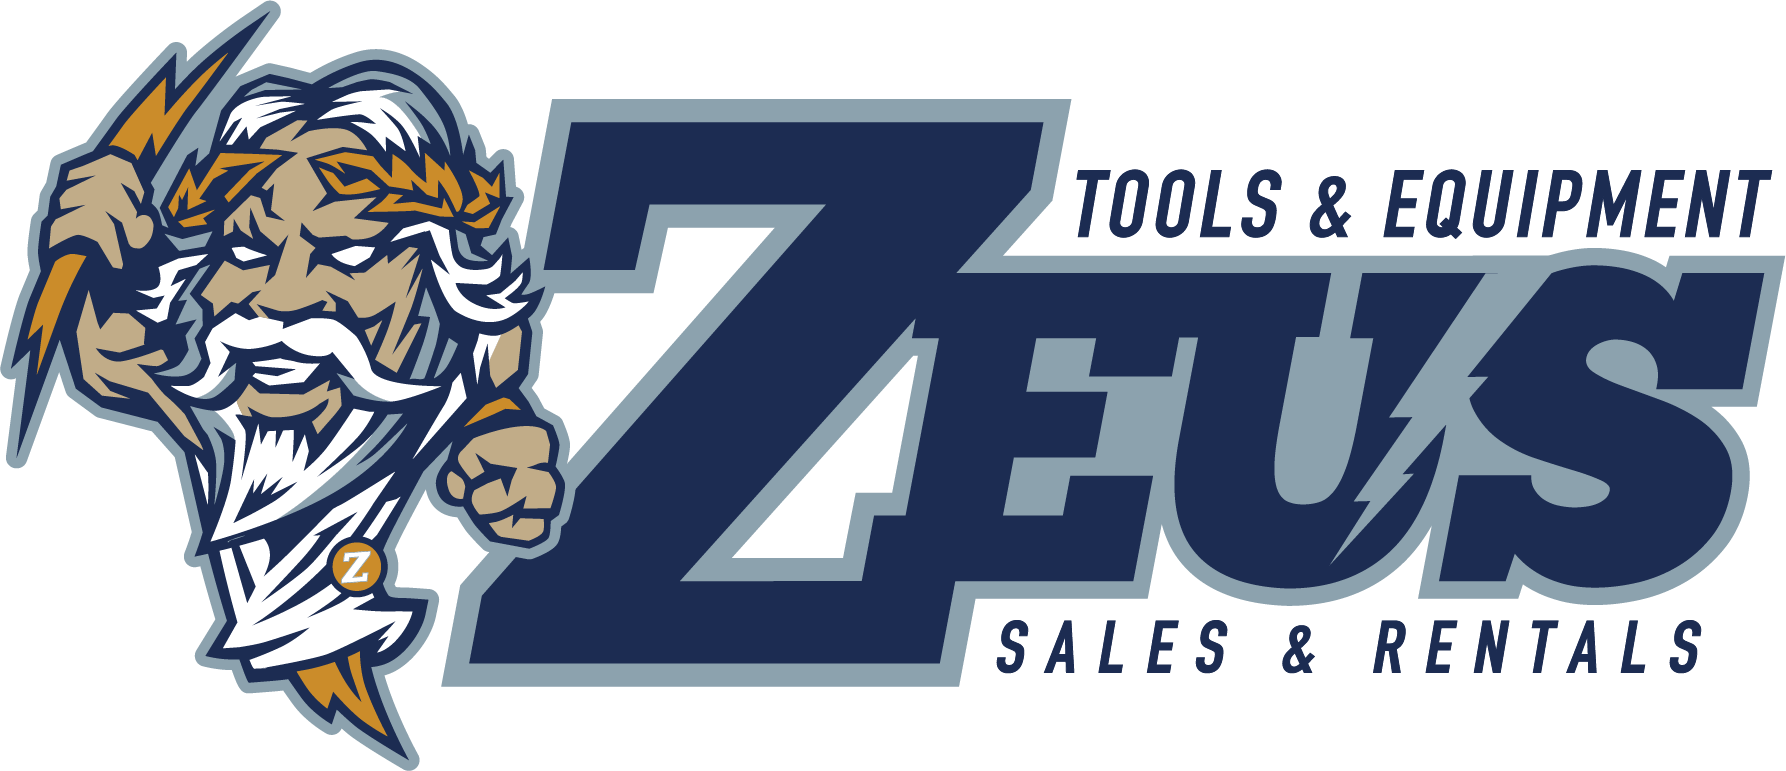 Zeus Sales & Equipment Rental